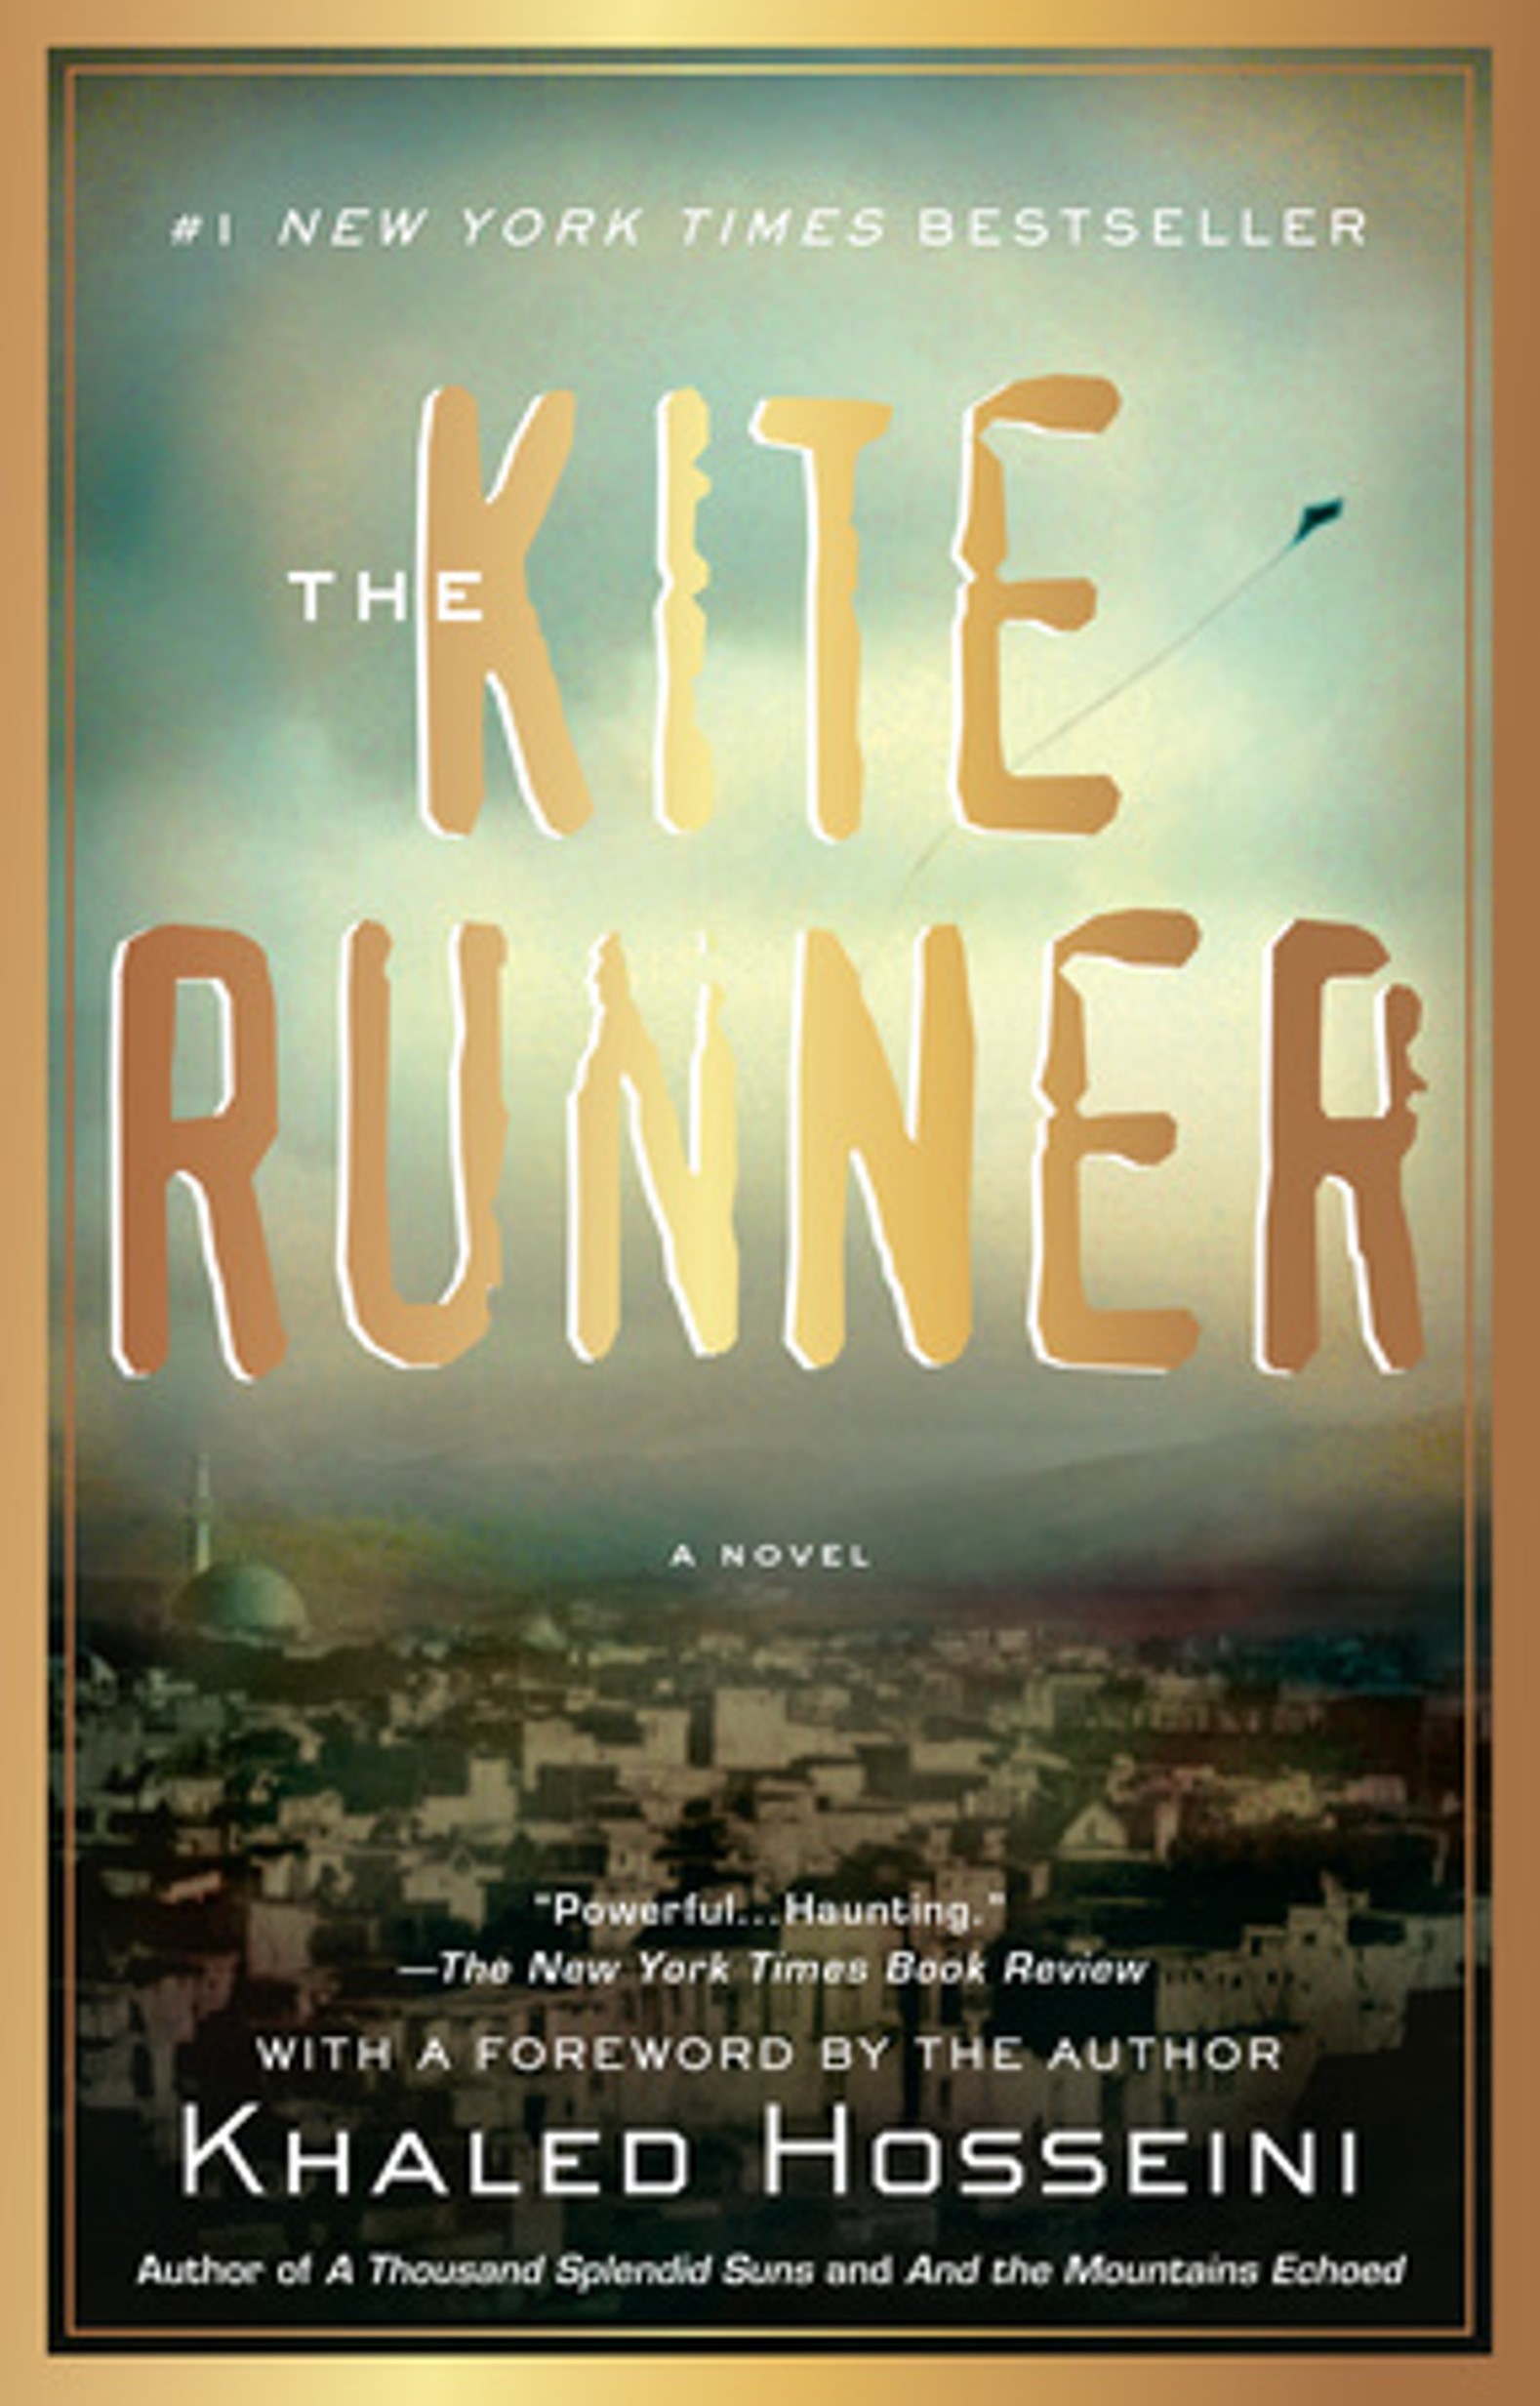 Book cover of The Kite Runner.